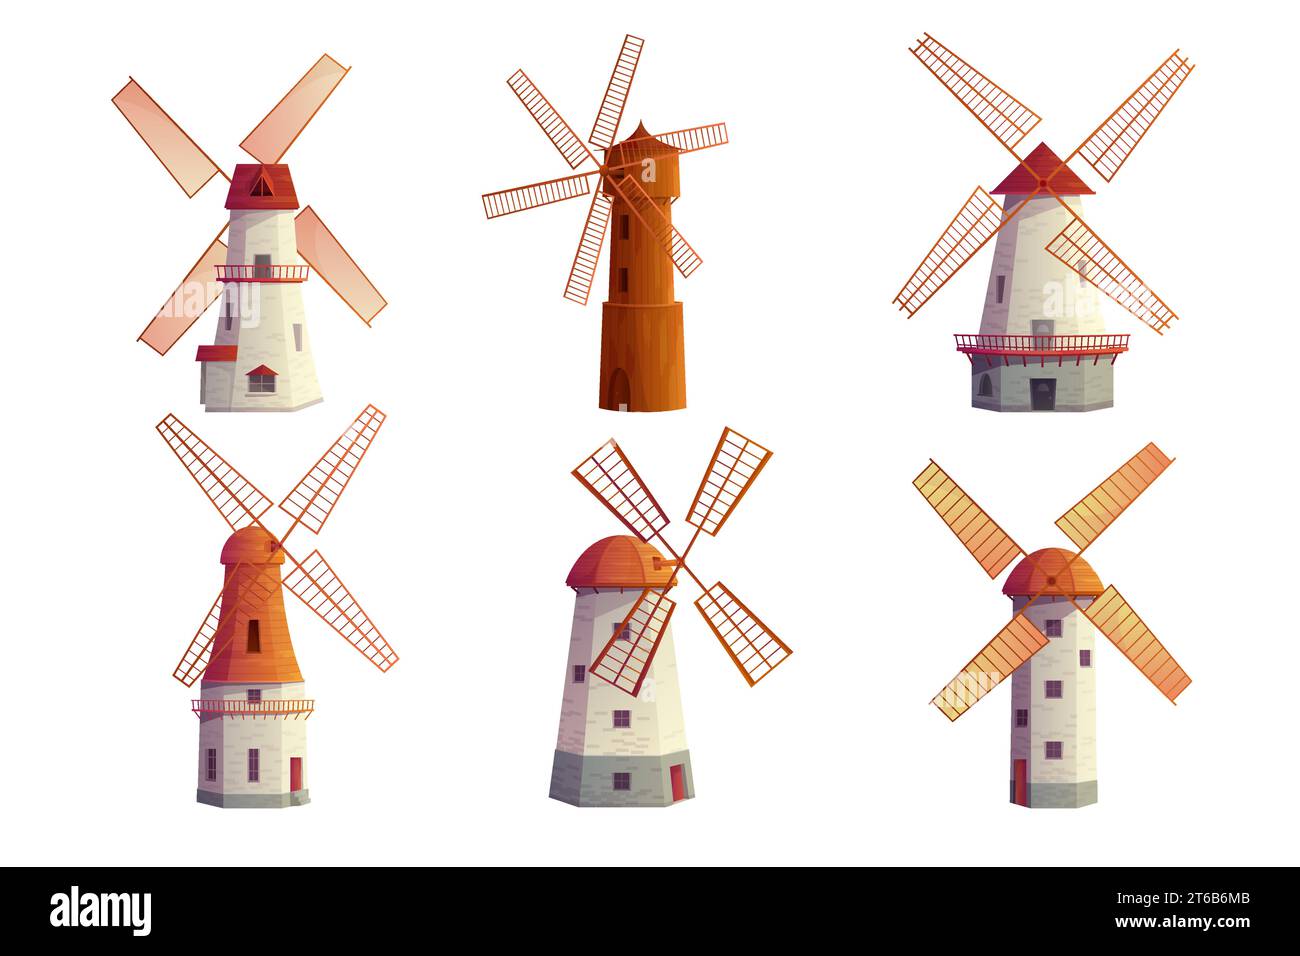 Alte Windmühlen setzen Vektor-Illustration. Cartoon isolierte alte Bauernhöfe und hölzerne Turmmühlen zum Mahlen von Weizenmehl mit Wind, Sammlung verschiedener niederländischer Bauernhäuser mit Ventilatoren zum Mahlen Stock Vektor